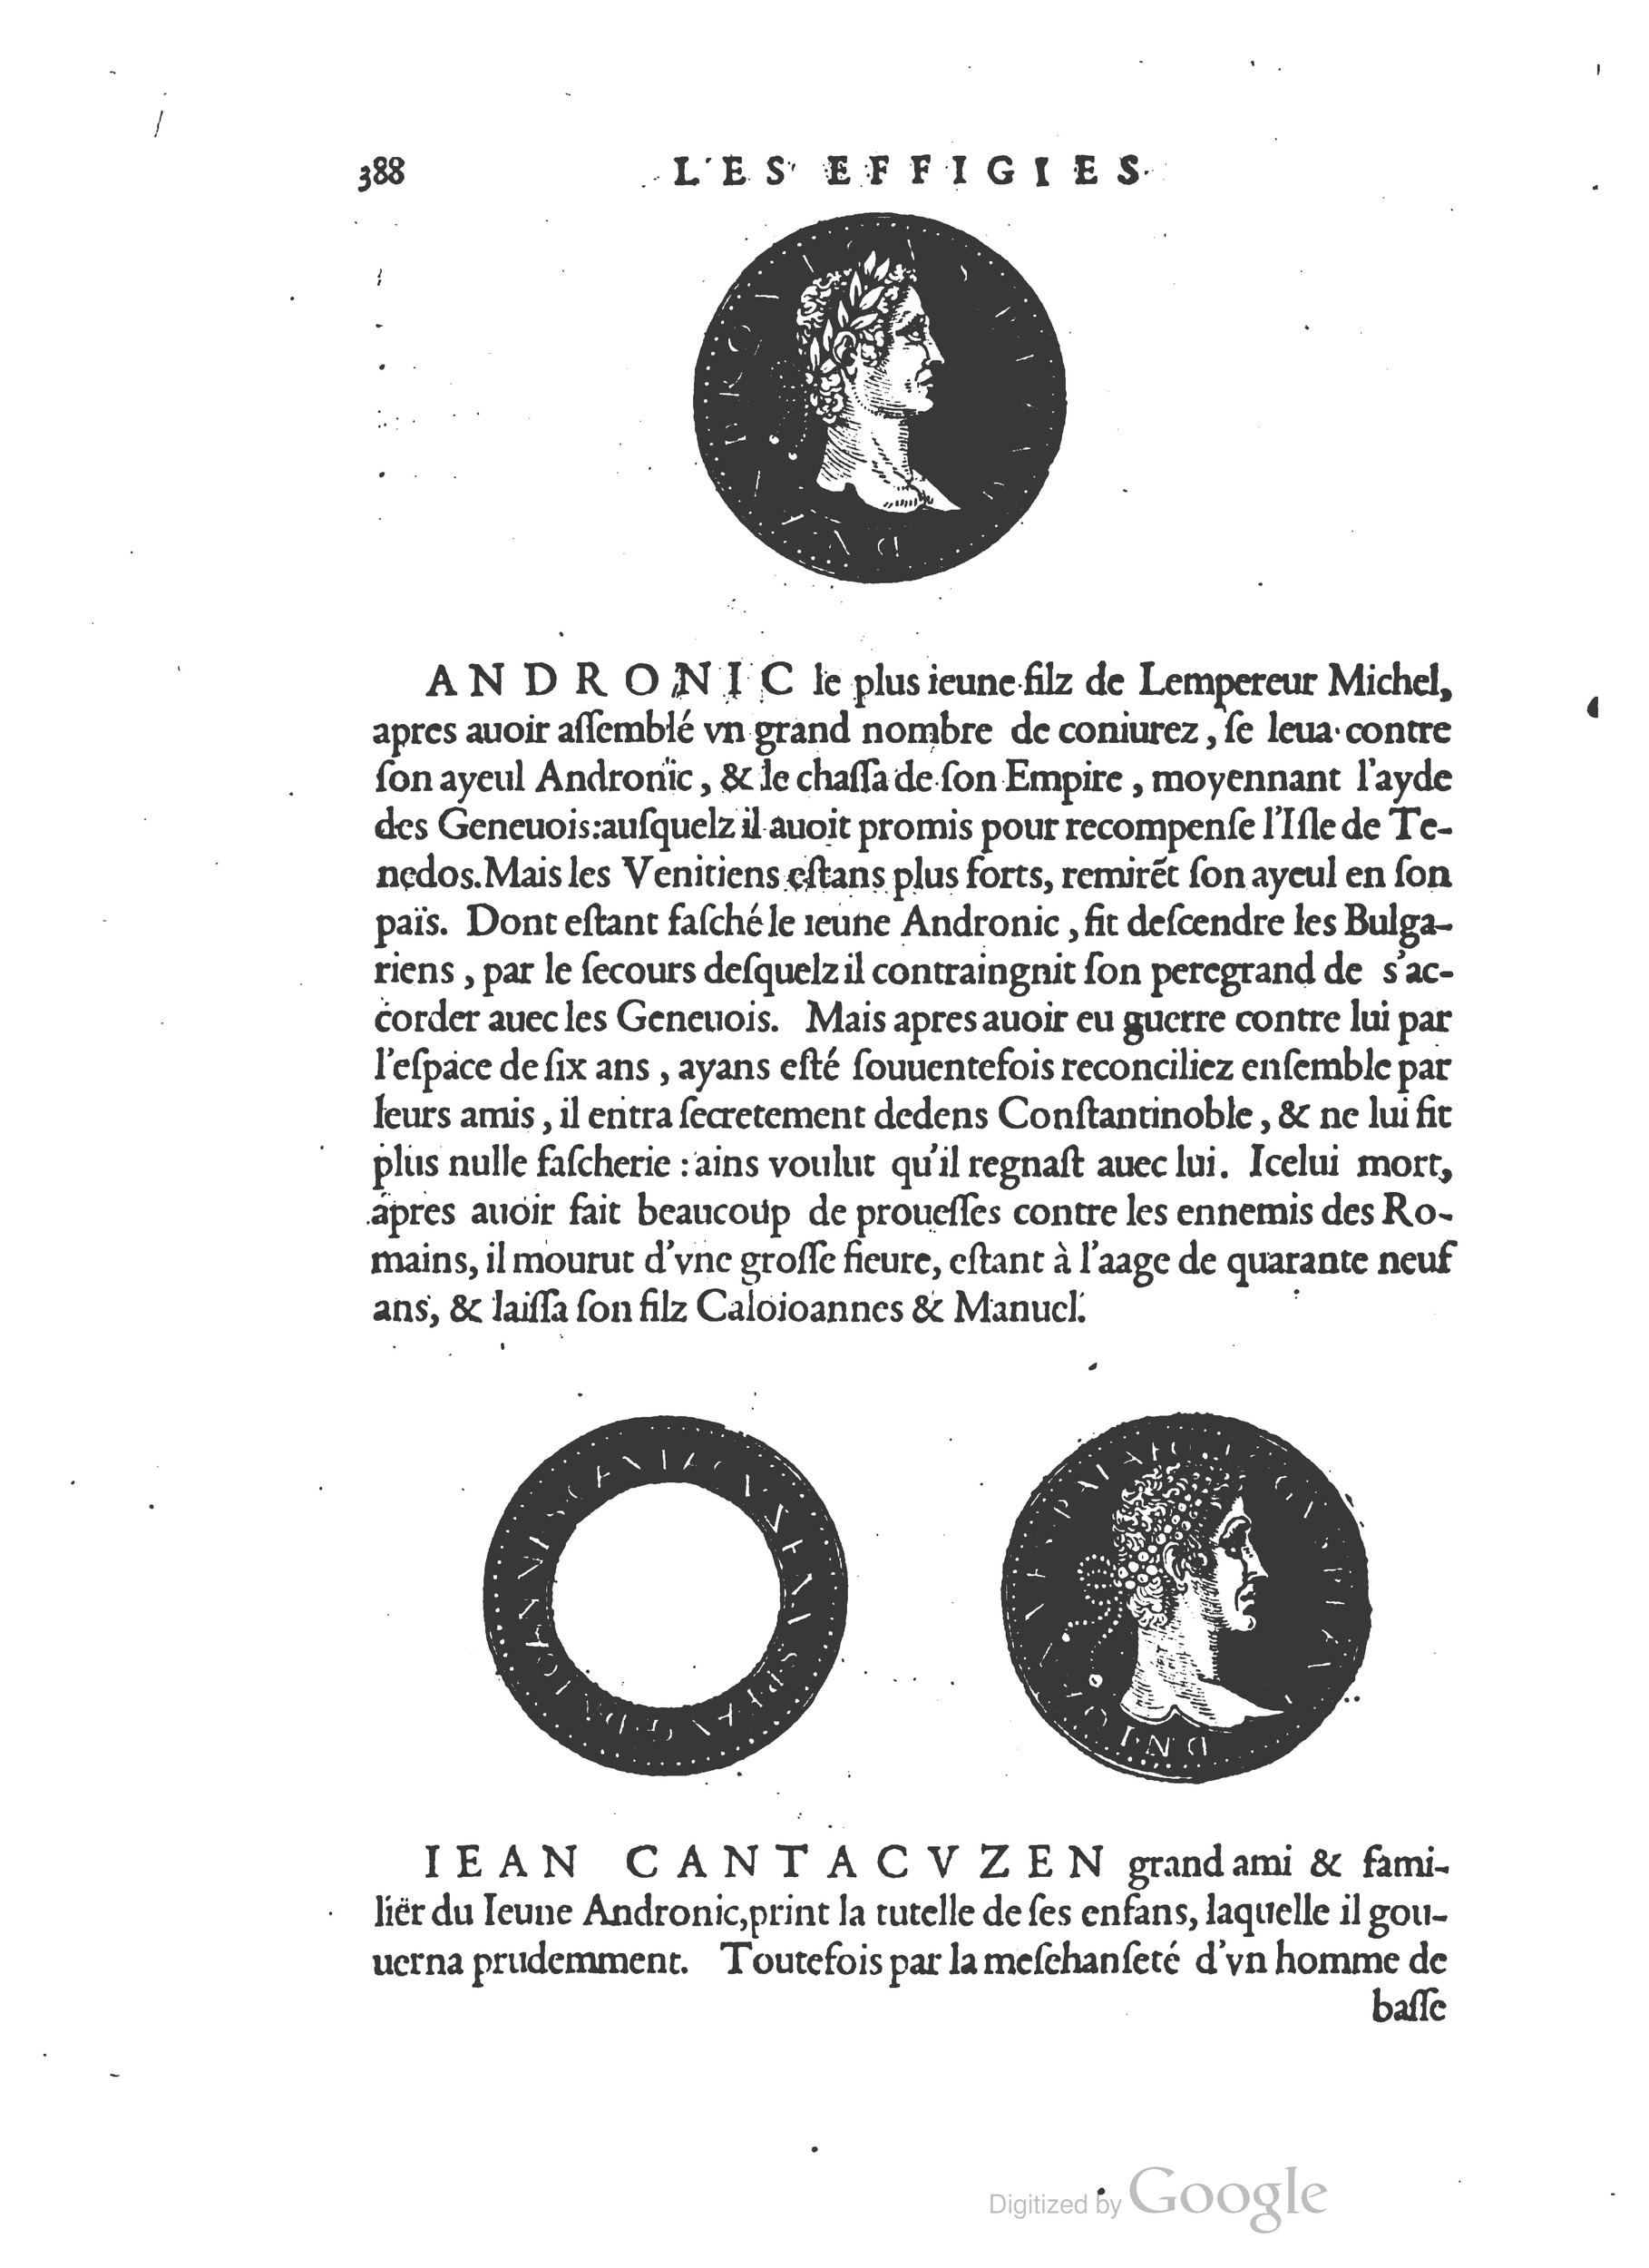 1553 Epitome du trésor des antiquités Strada Guérin_BM Lyon_Page_421.jpg